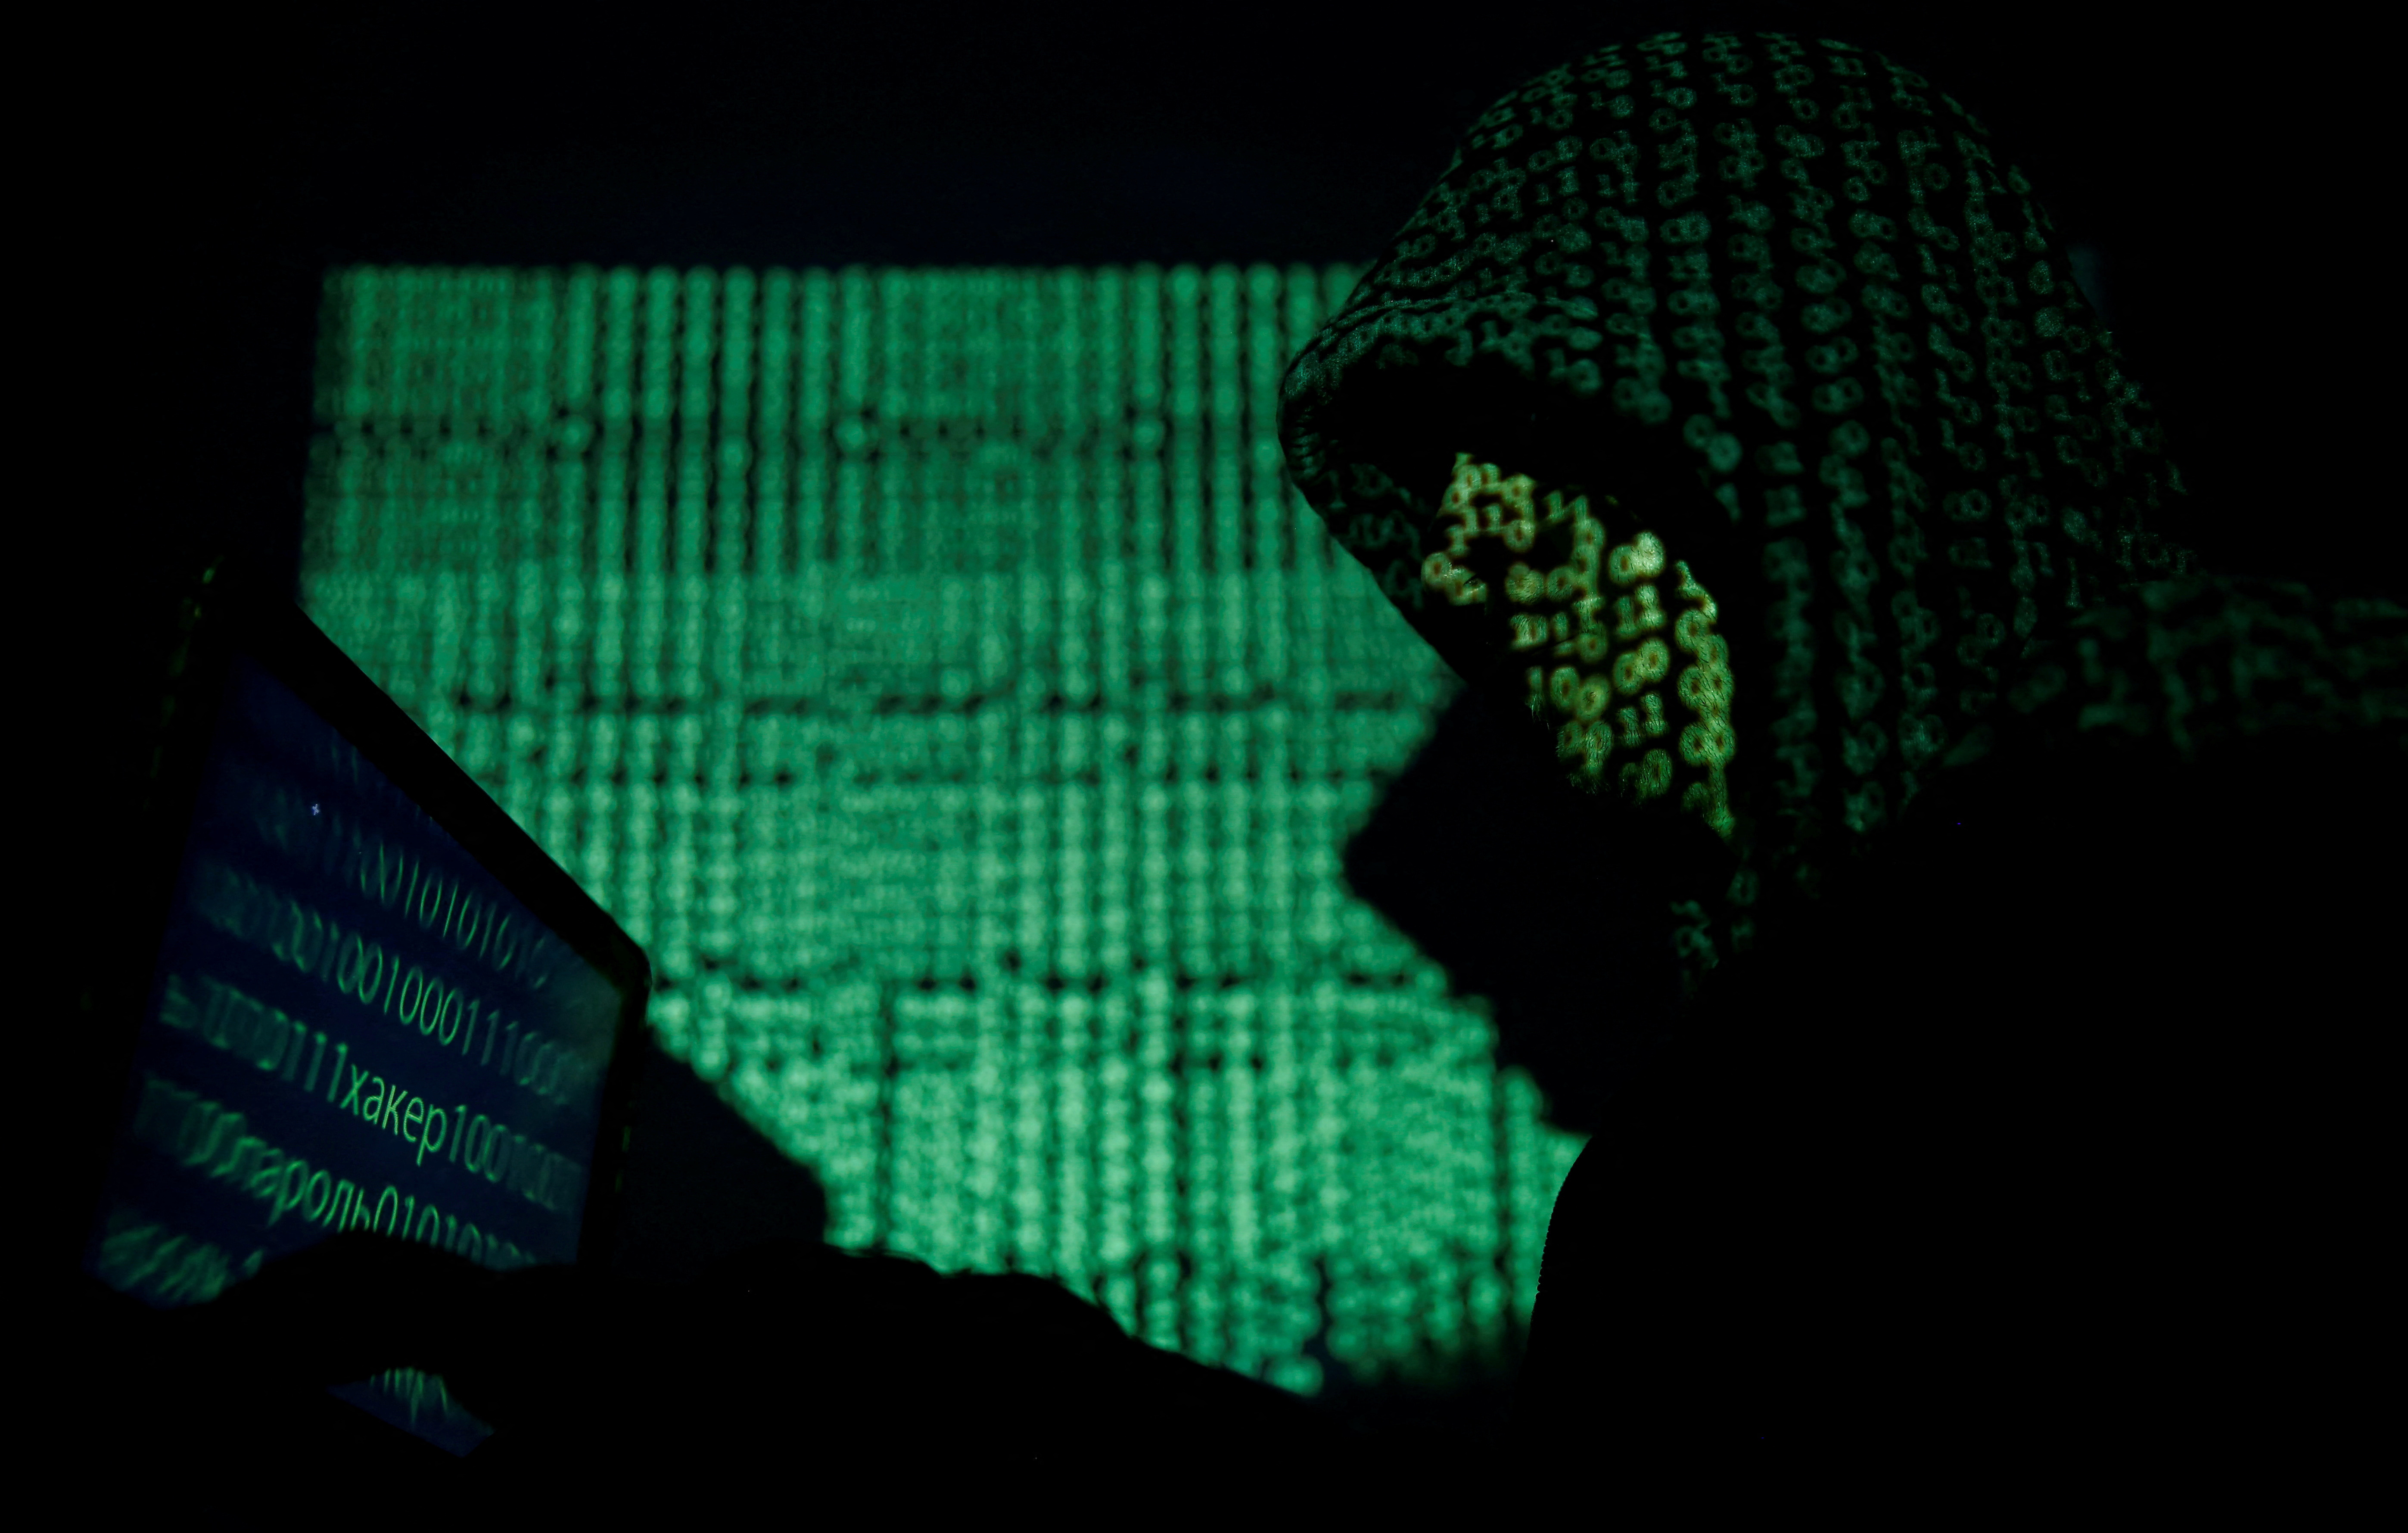 Een gemaskerde man houdt een laptop vast terwijl hij de elektronische code in deze illustratie te zien krijgt